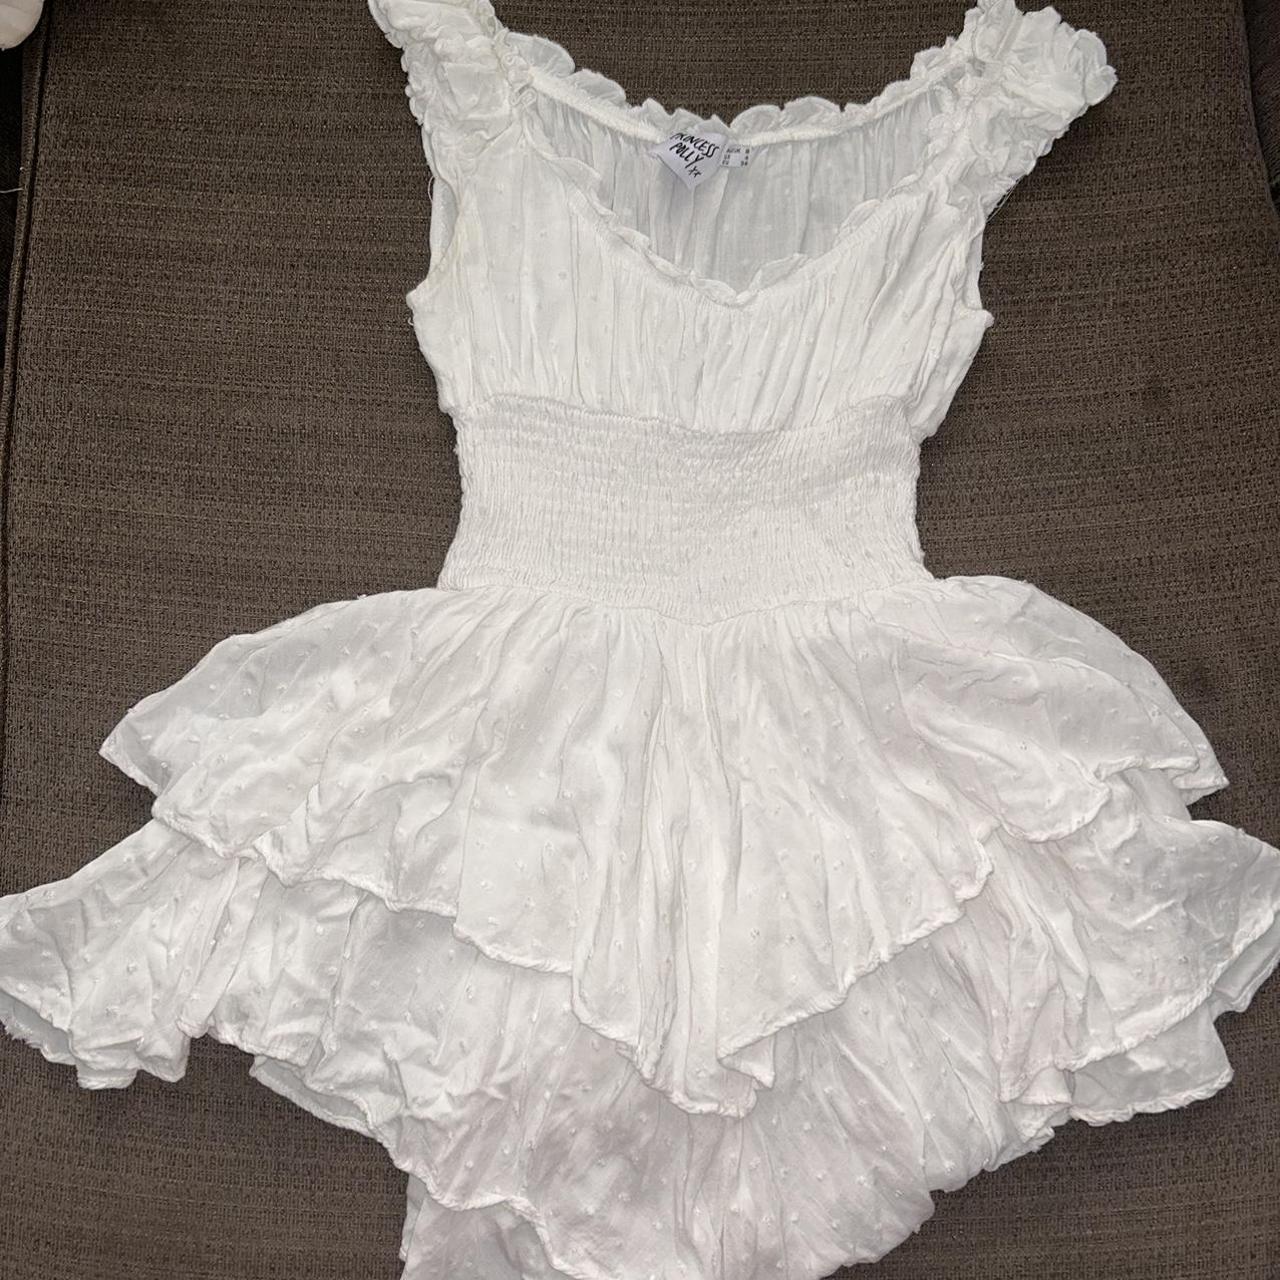 Princess Polly mini white dress! Size 4 super... - Depop